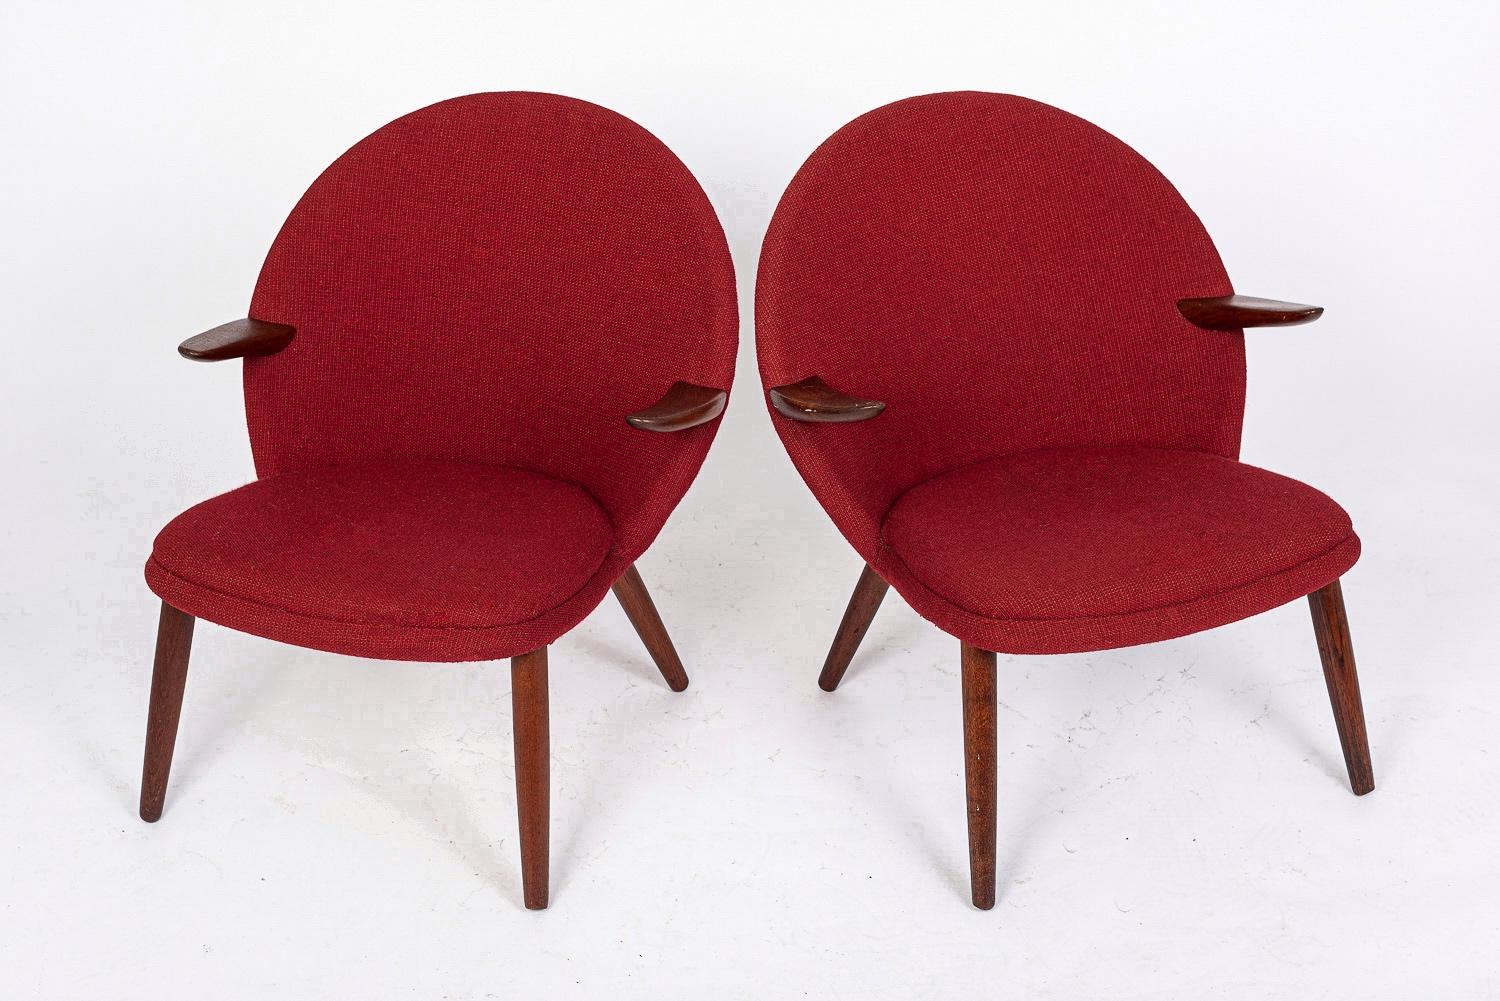 Cette paire exceptionnelle de chaises longues danoises modernes du milieu du siècle a été conçue par Kurt Olsen pour Glostrup Møbelfabrik et fabriquée au Danemark vers 1960. Le design moderne scandinave classique présente des lignes épurées,